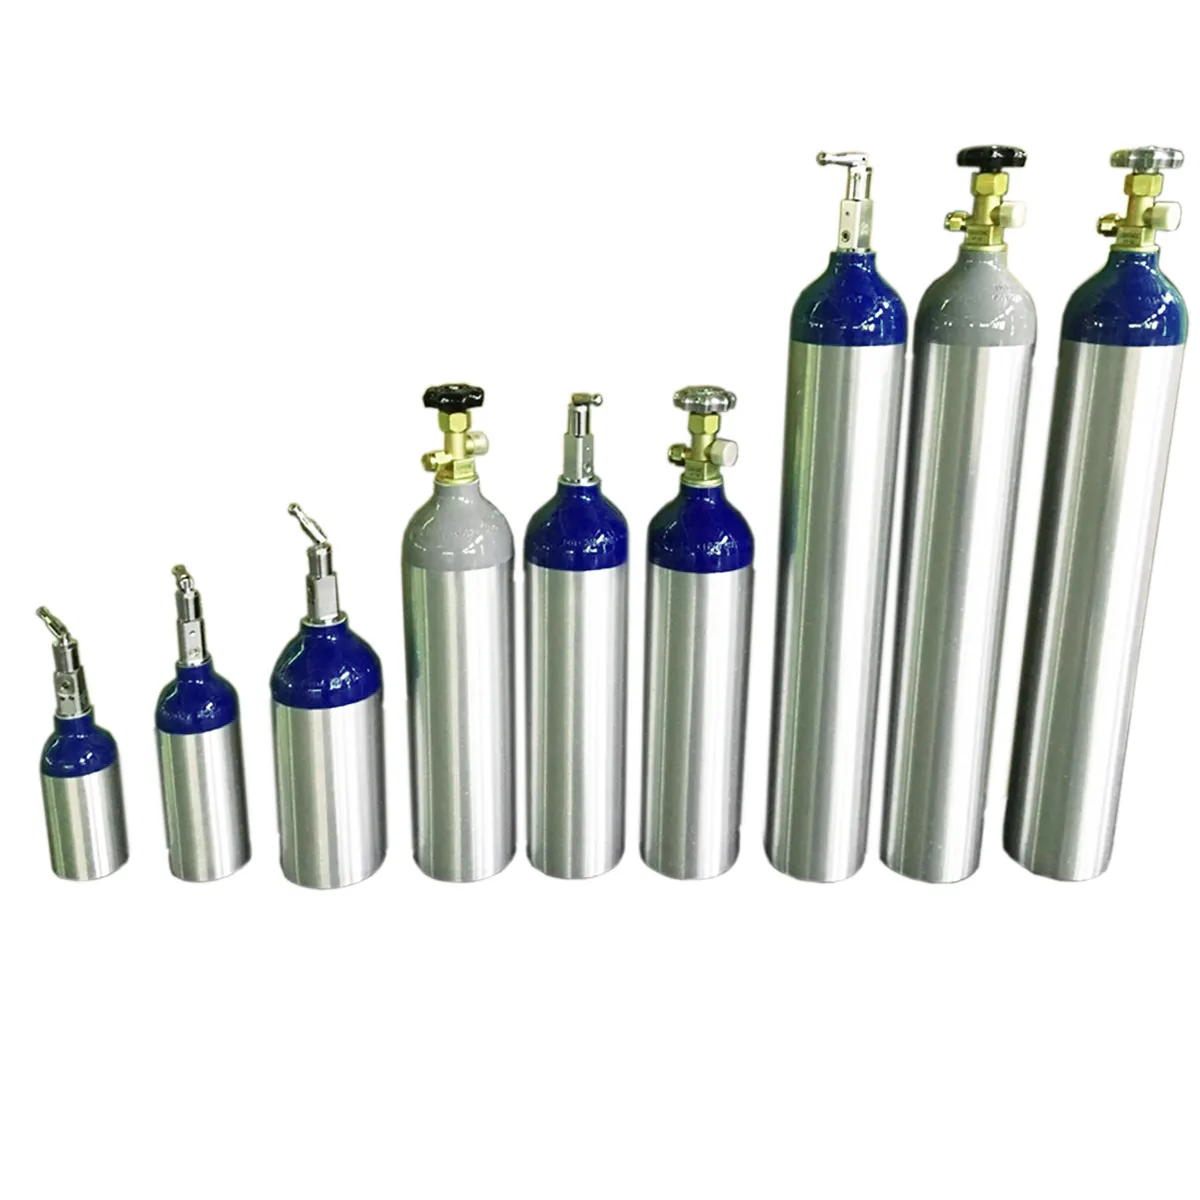 Food Grade High Pressure aluminum cylinder Carbon Dioxide Cylinder for Soda Water